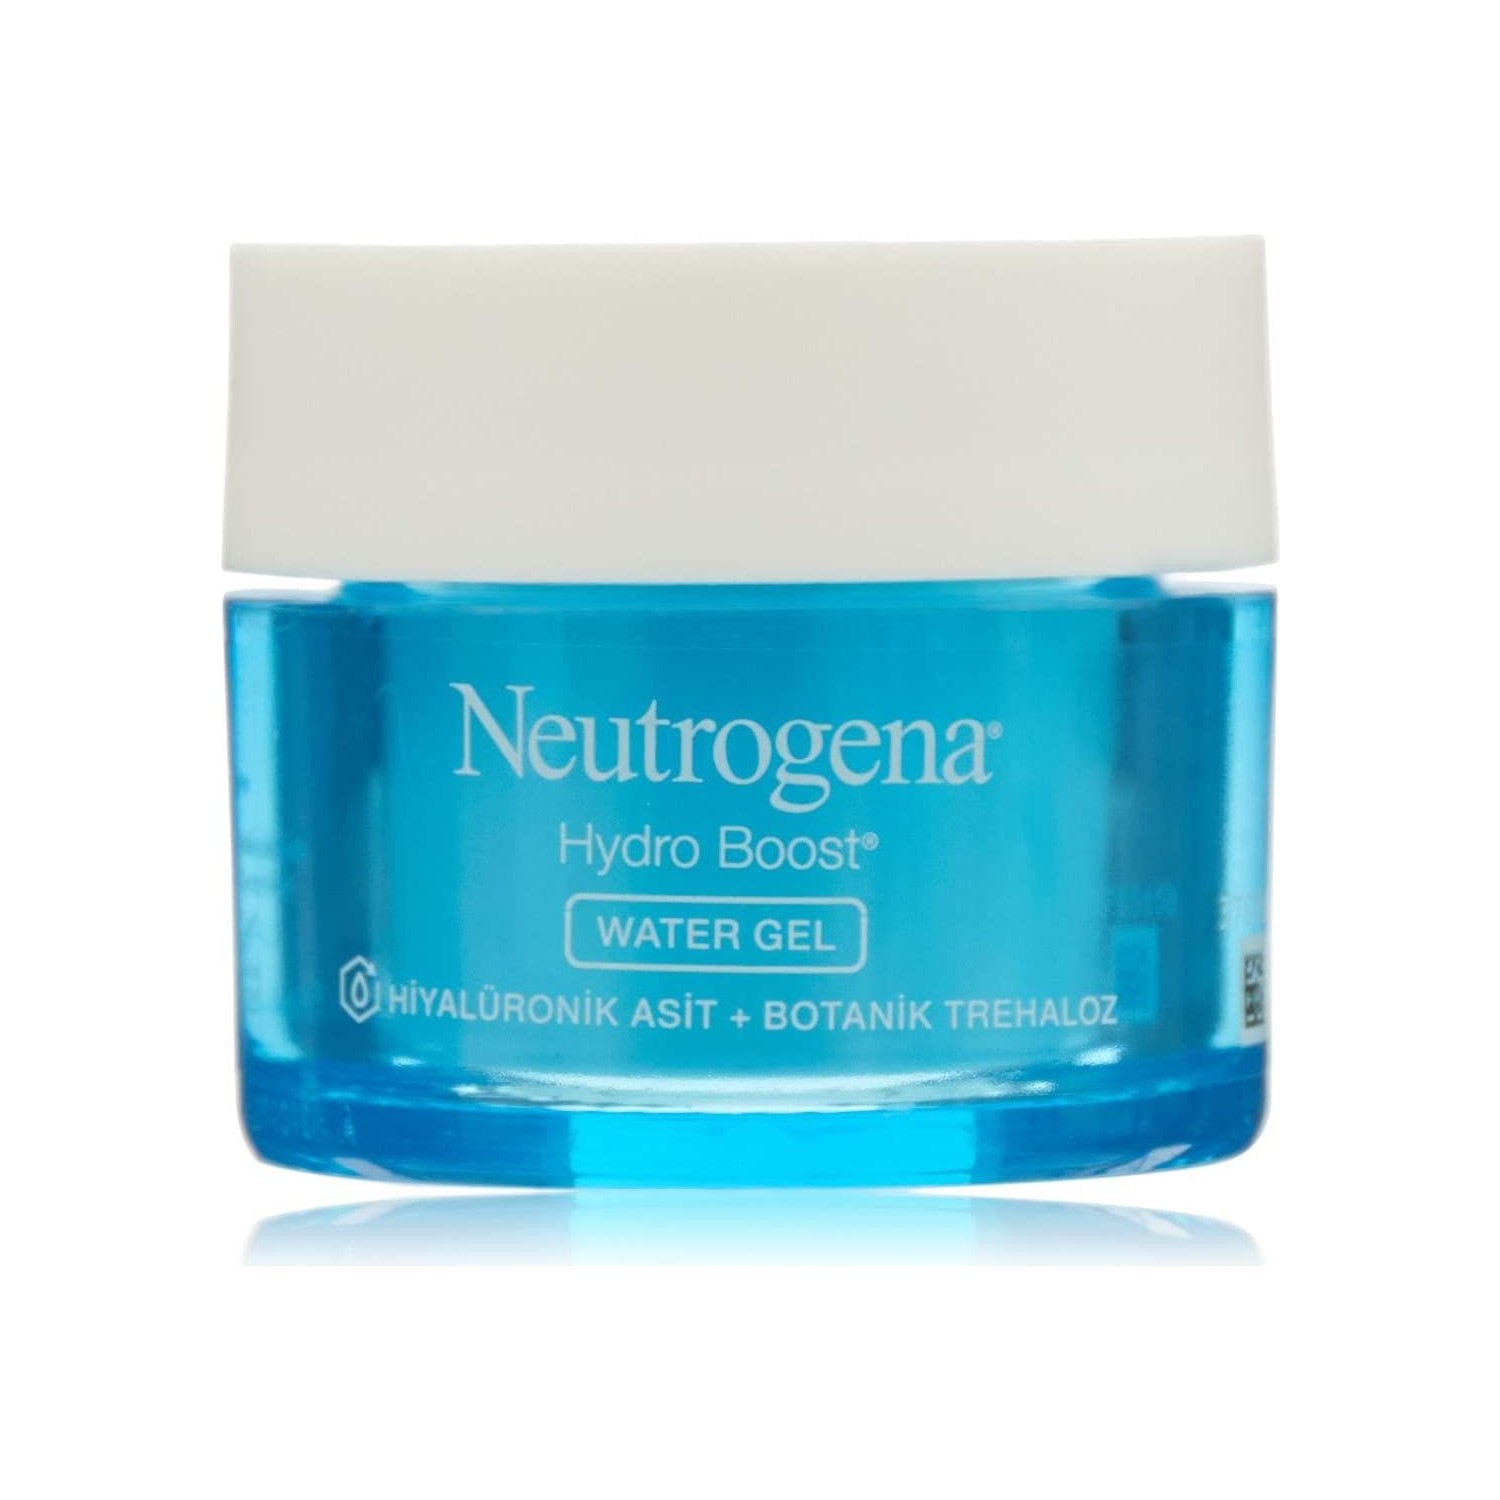 Крем для лица Neutrogena Hydro Boost Water Gel увлажняющий для нормальной и комбинированной кожи, 50 мл крем увлажняющий neutrogena hydro boost water gel для нормальной кожи 2 упаковки по 50 мл